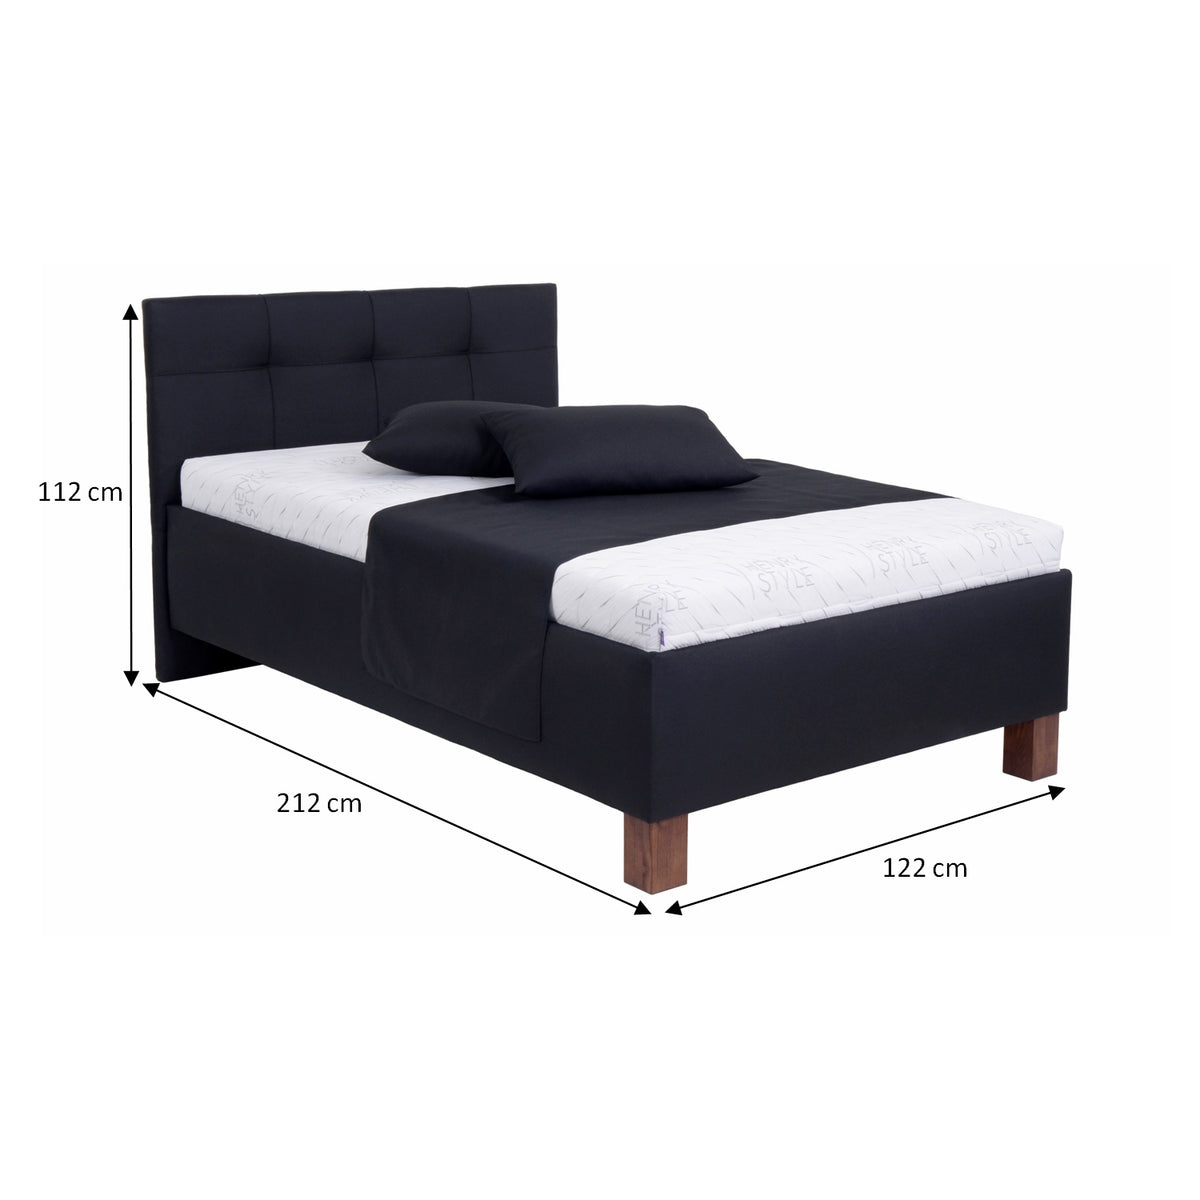 Čalouněná postel Mary 120x200, černá, včetně matrace